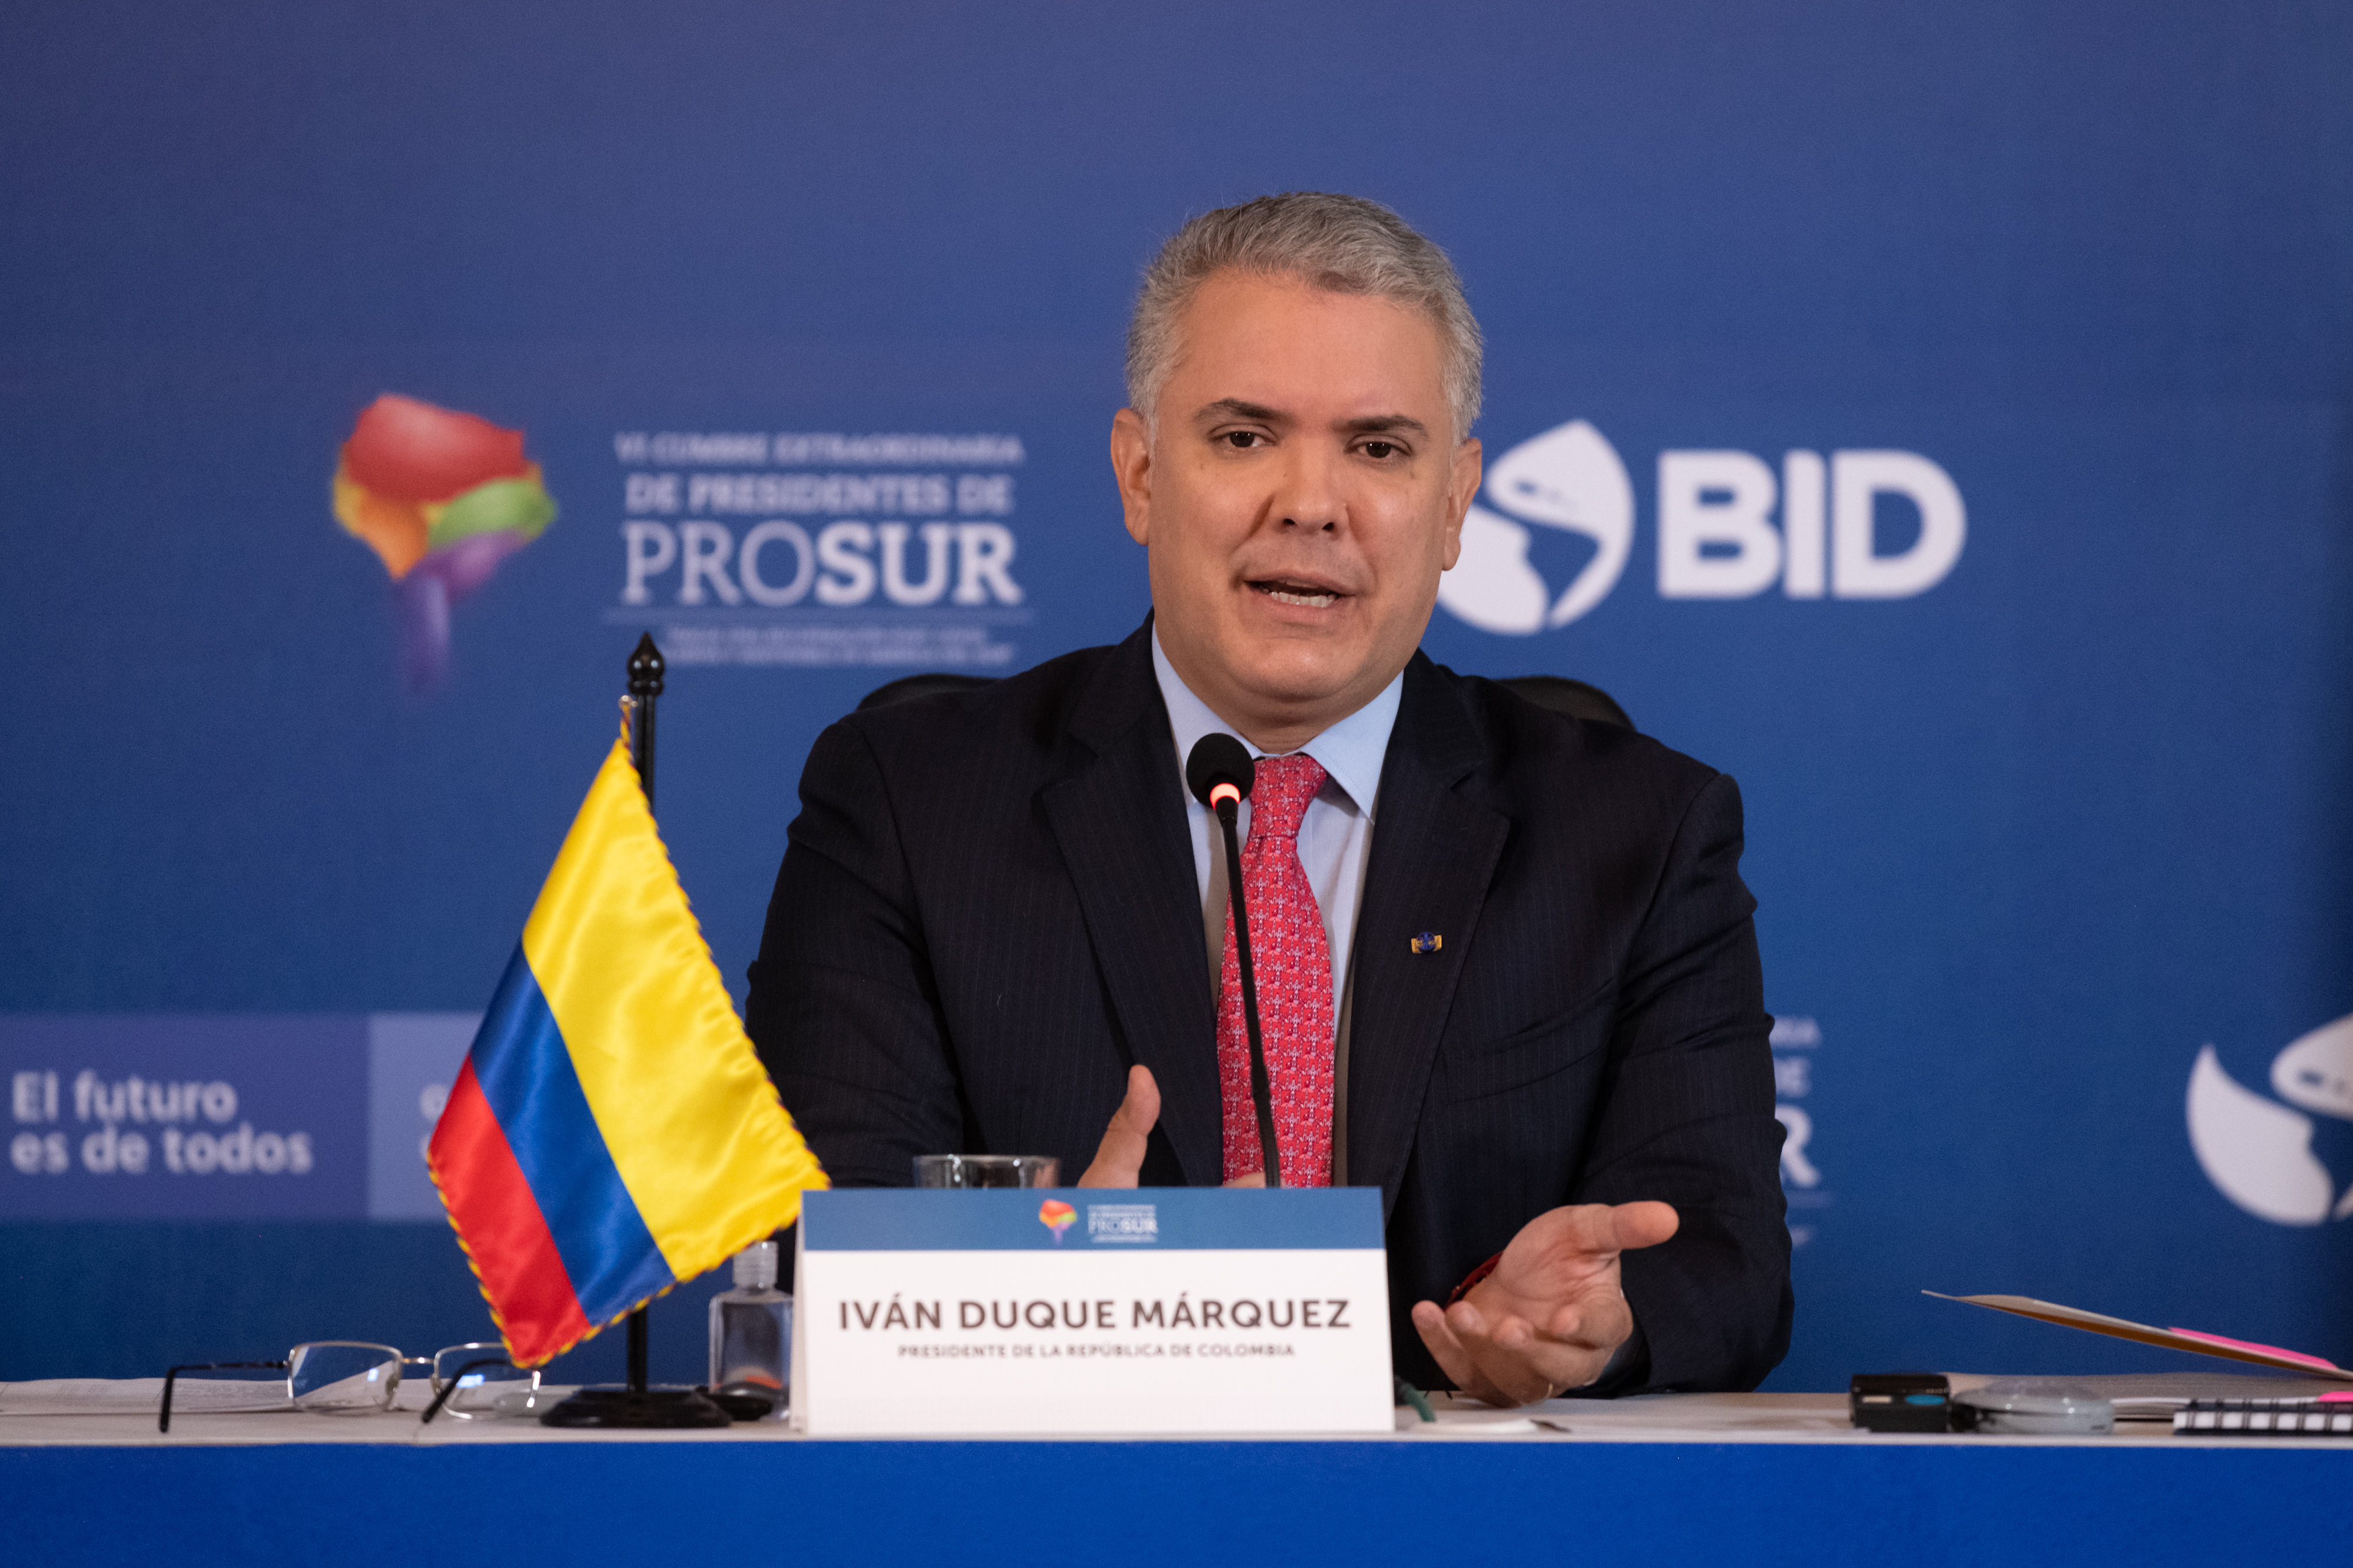 Colombia lideró la VI Reunión de presidentes PROSUR “Hacia una Recuperación Post COVID Inclusiva y Sostenible en América del Sur”